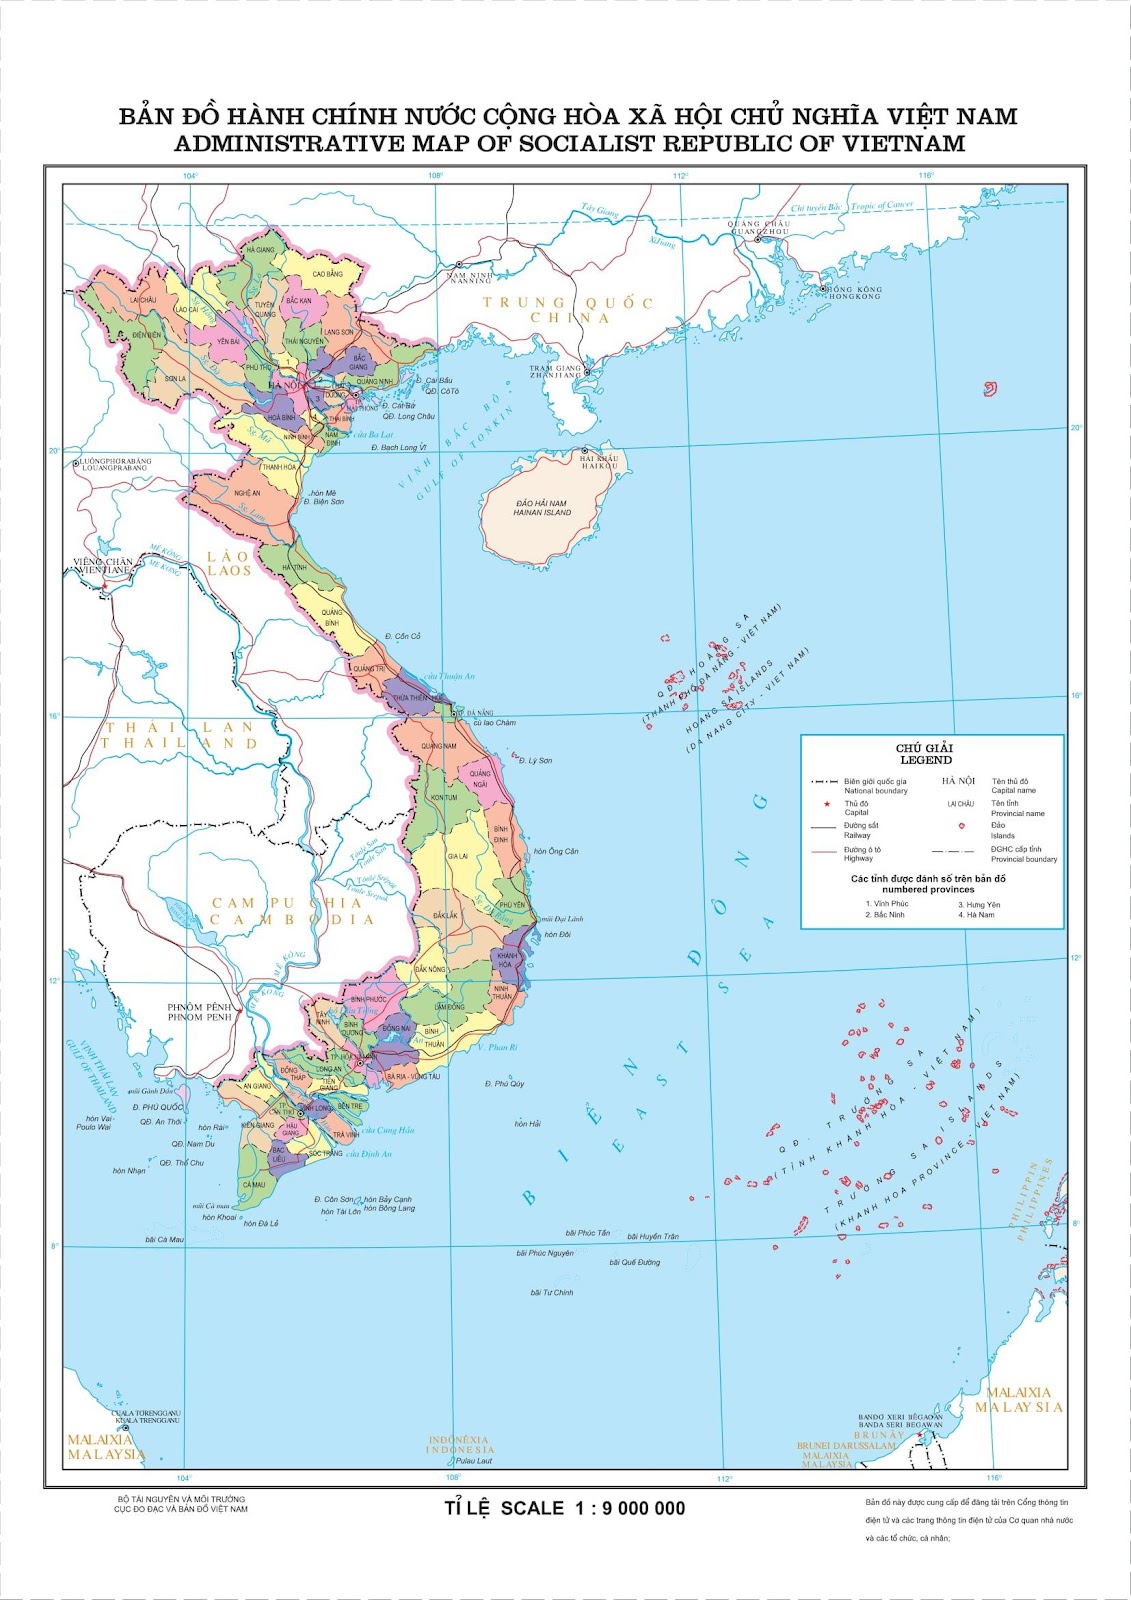 Bản đồ hành chính Việt Nam: Dễ dàng tìm kiếm thông tin, tra cứu chi tiết các vùng miền, tỉnh thành trong cả nước. Cập nhật liên tục, giúp người dùng đến với đích đến nhanh chóng và hiệu quả hơn.